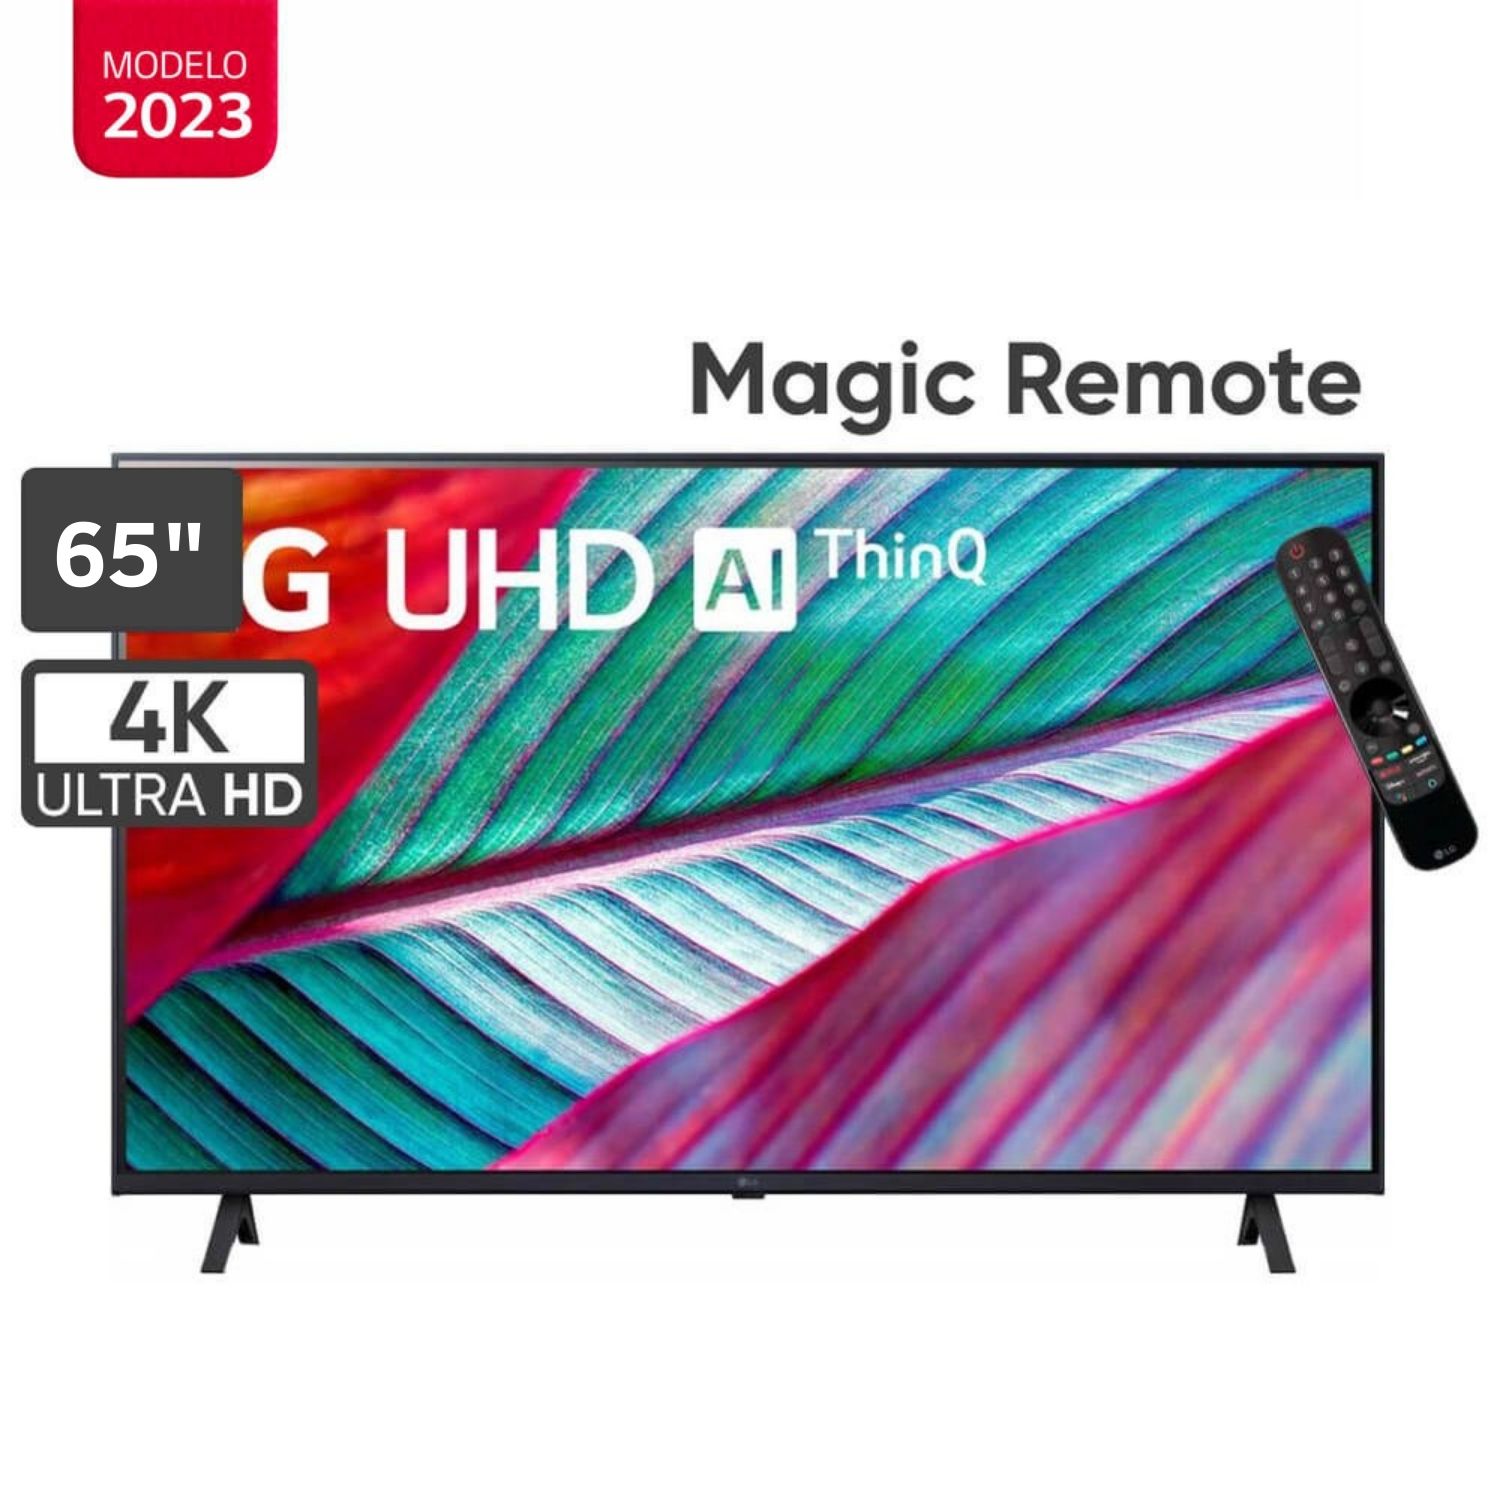 Televisor LG 65" LED Smart TV Ultra HD 4K con ThinQ AI 65UR8750PSA